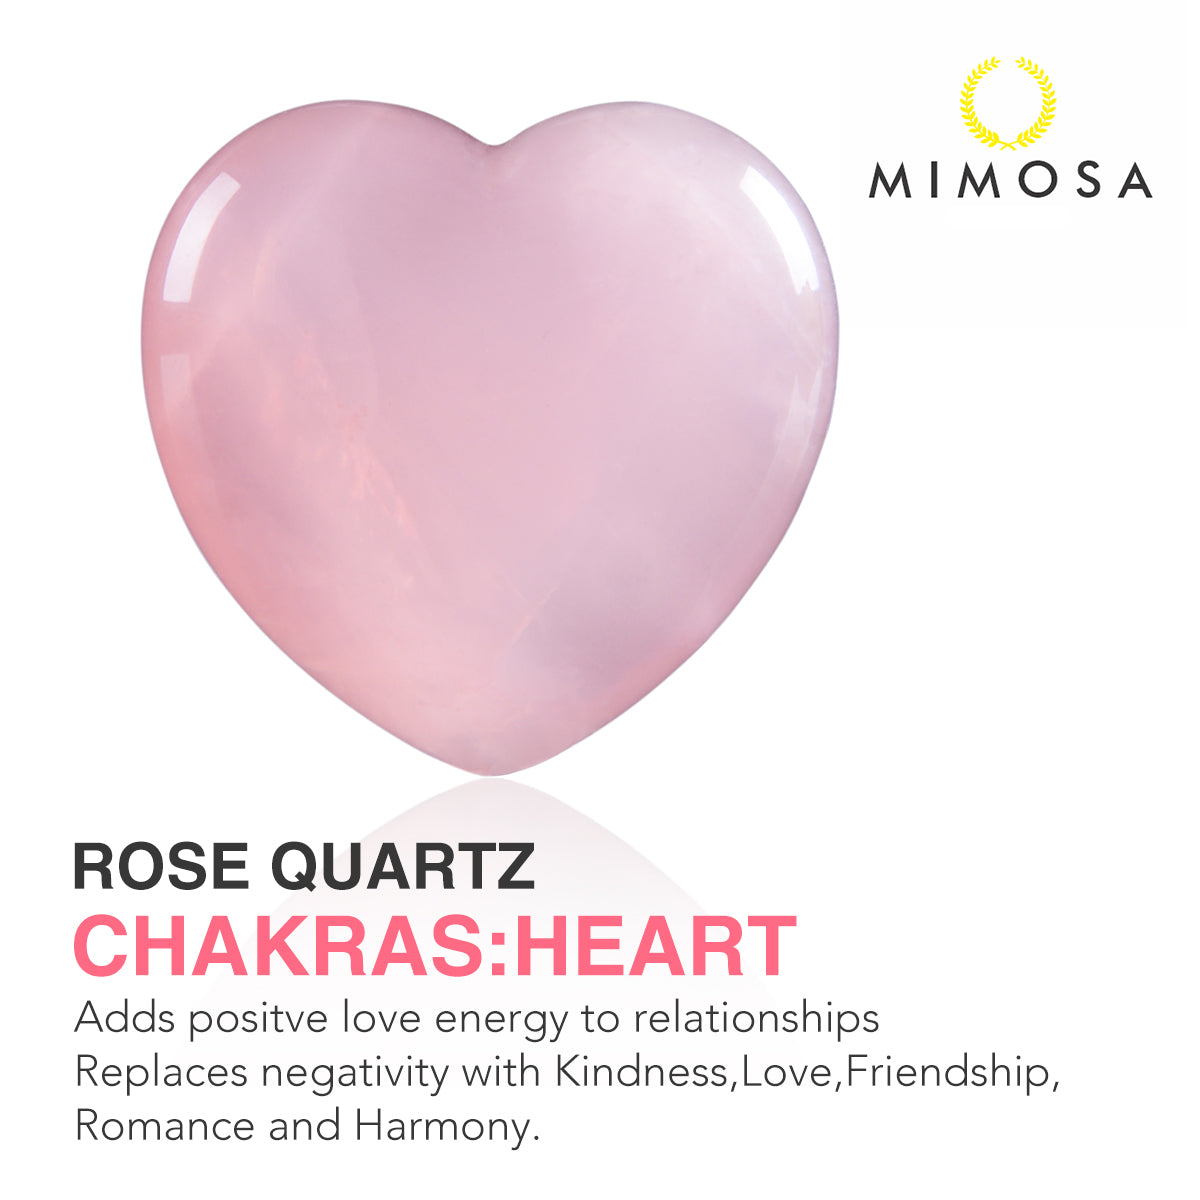 mimosa-rose-quartz-heart-chakra-1pcs-set